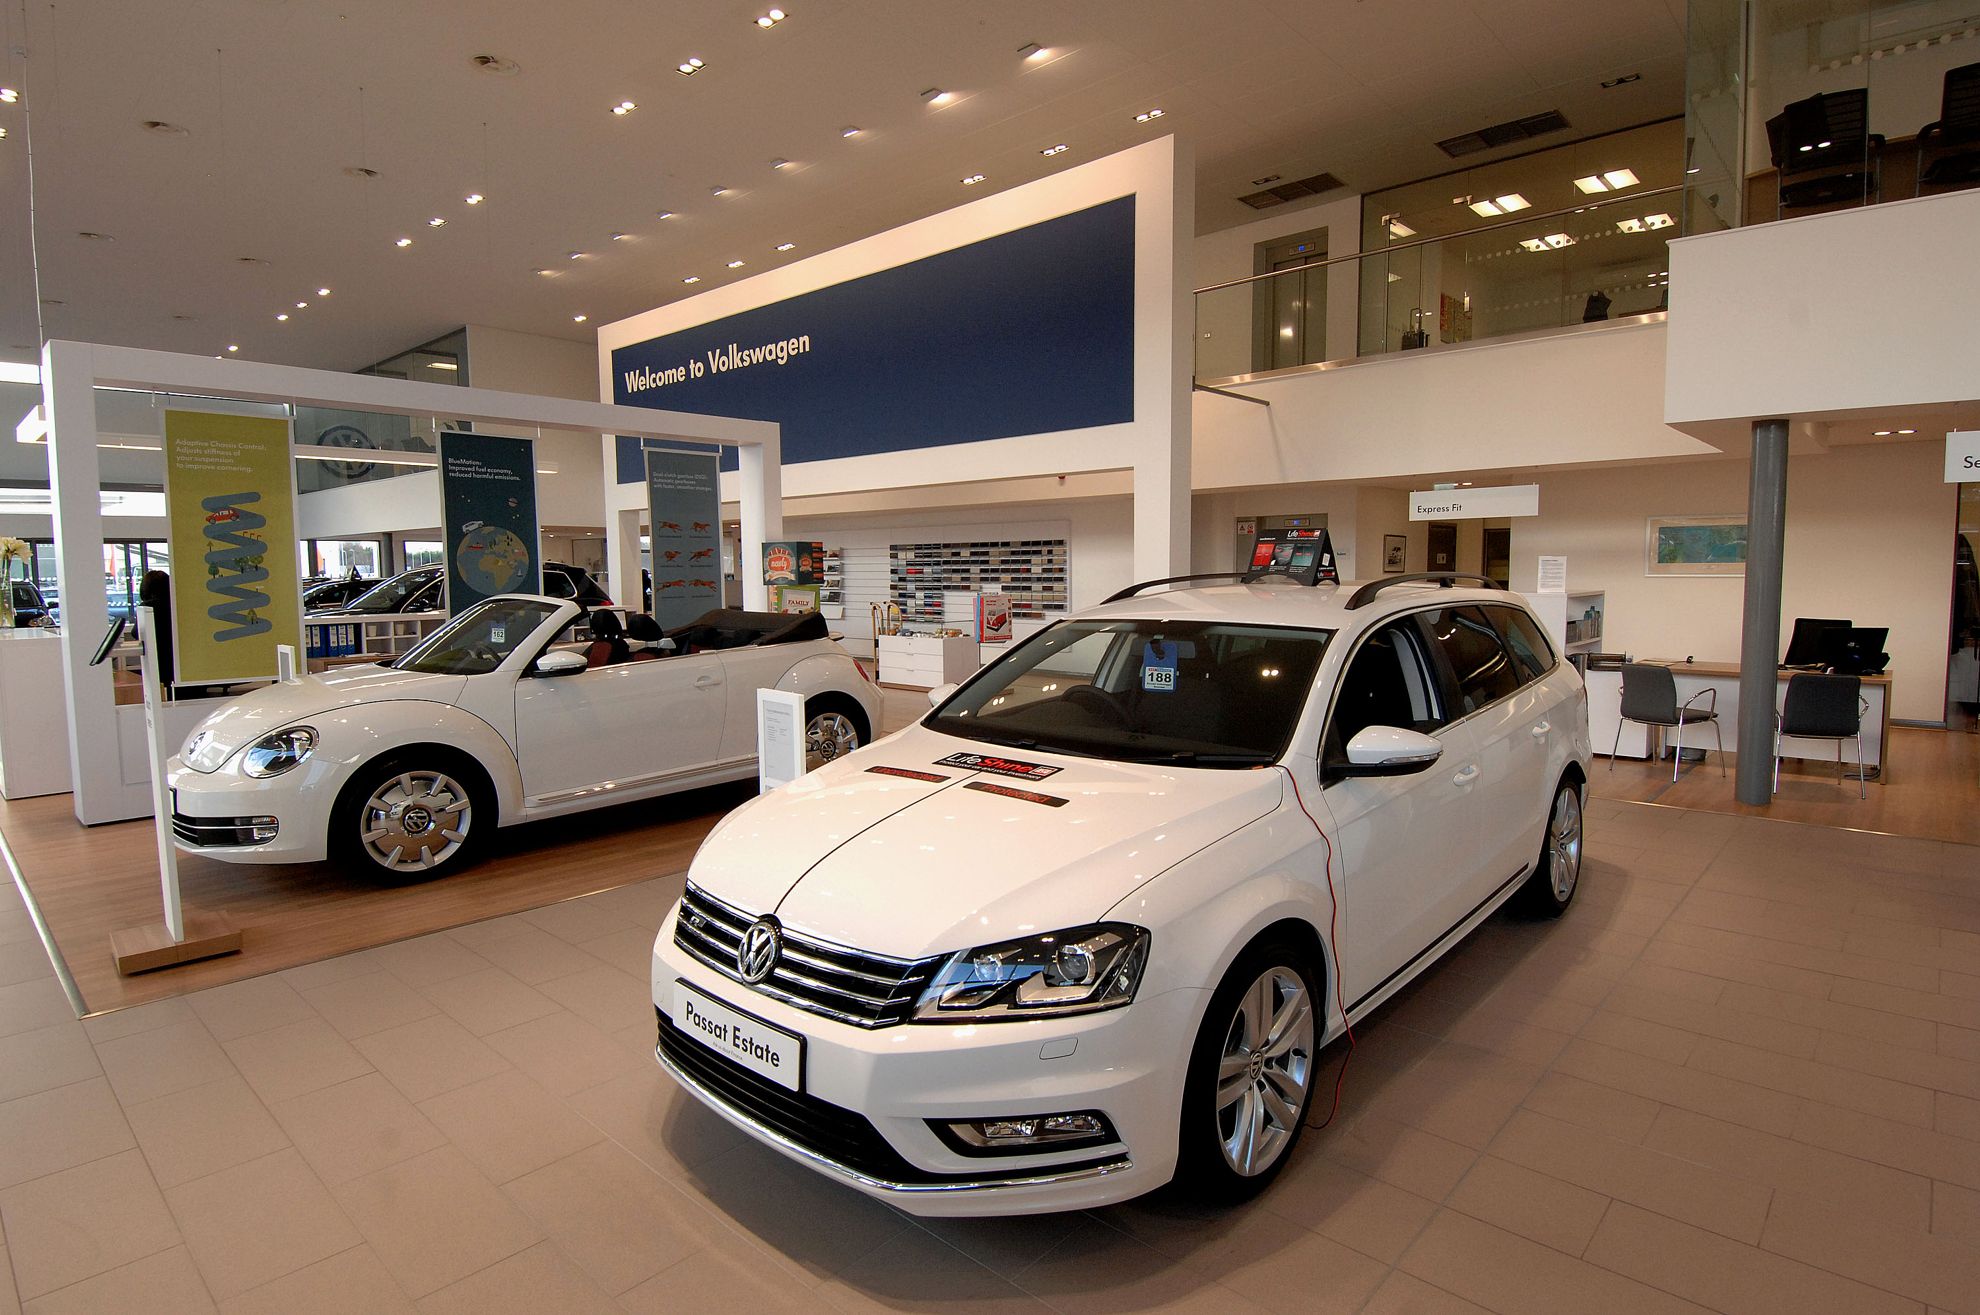 Volkswagen Dealership Sinclair in Swansea